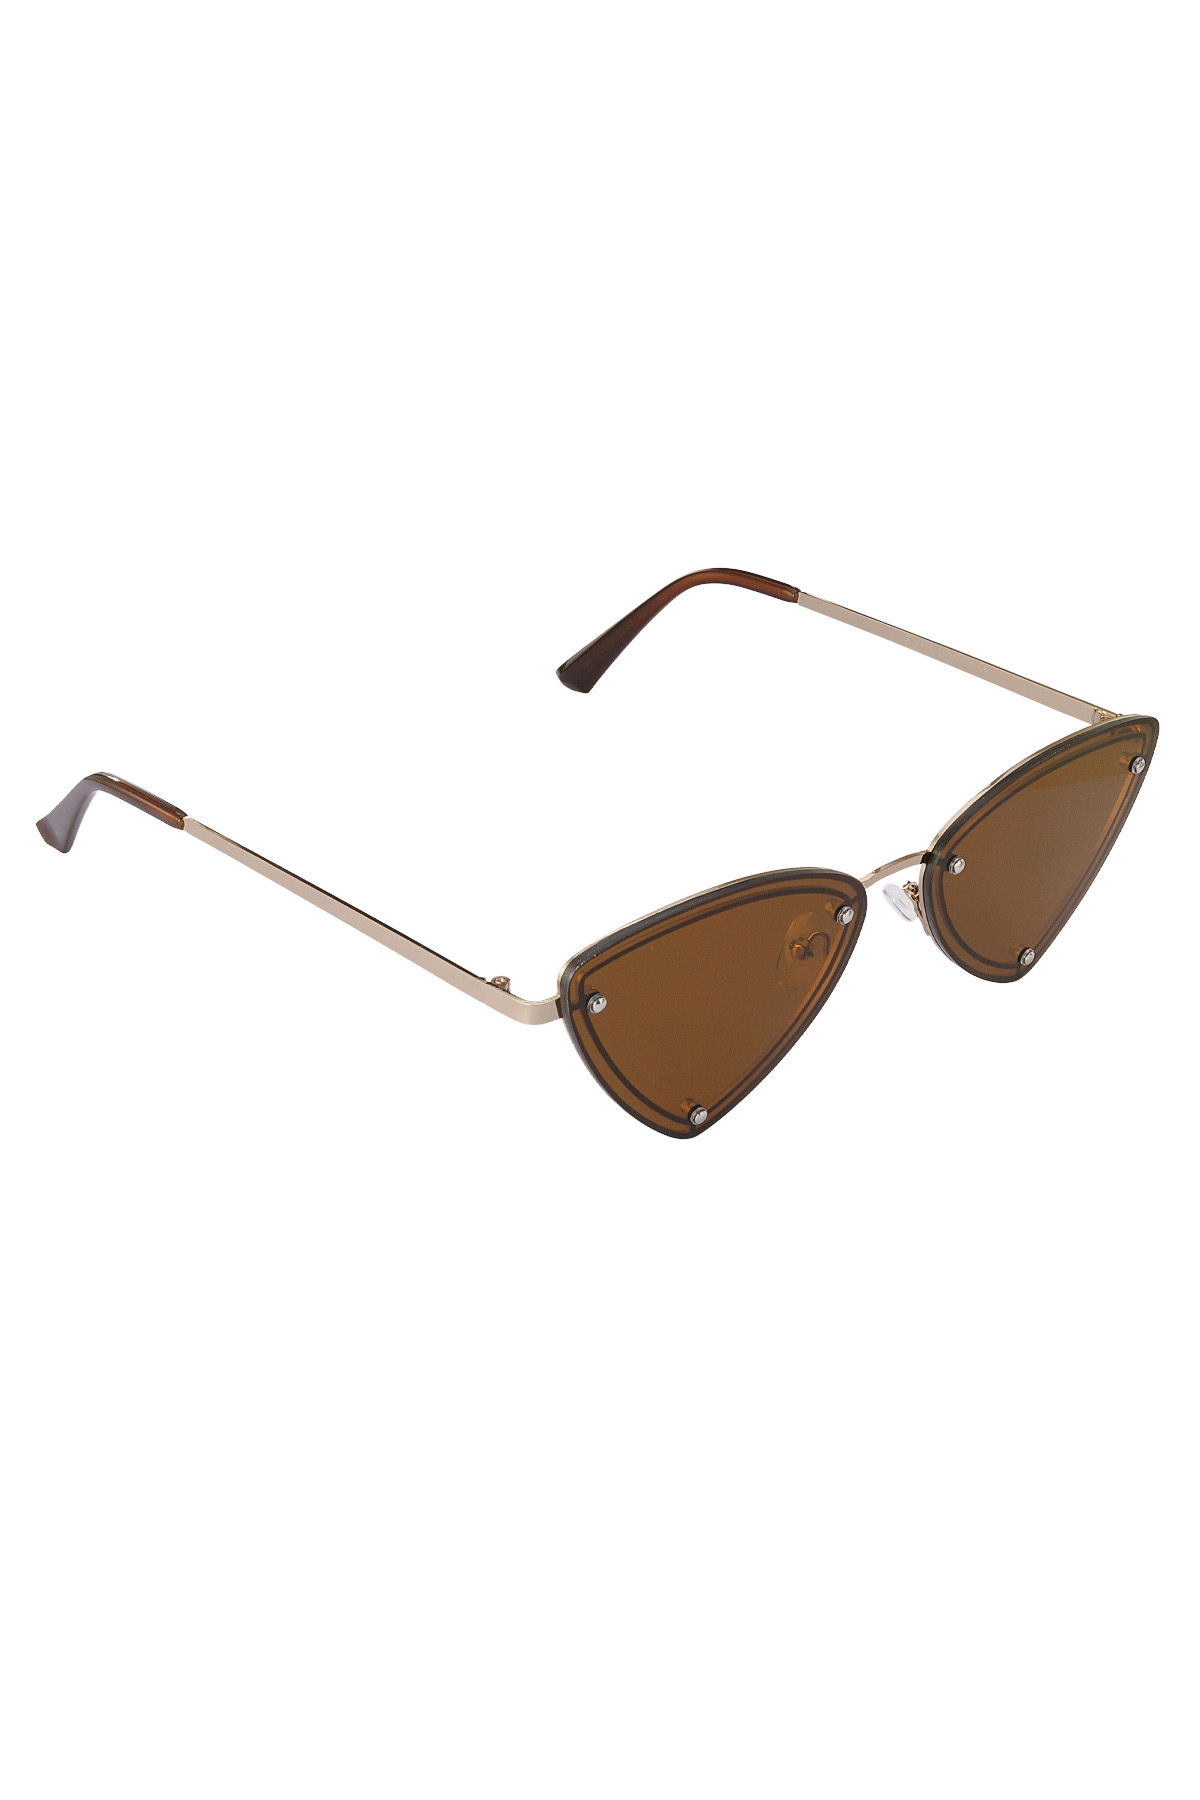 Retro party sunglasses - brown h5 